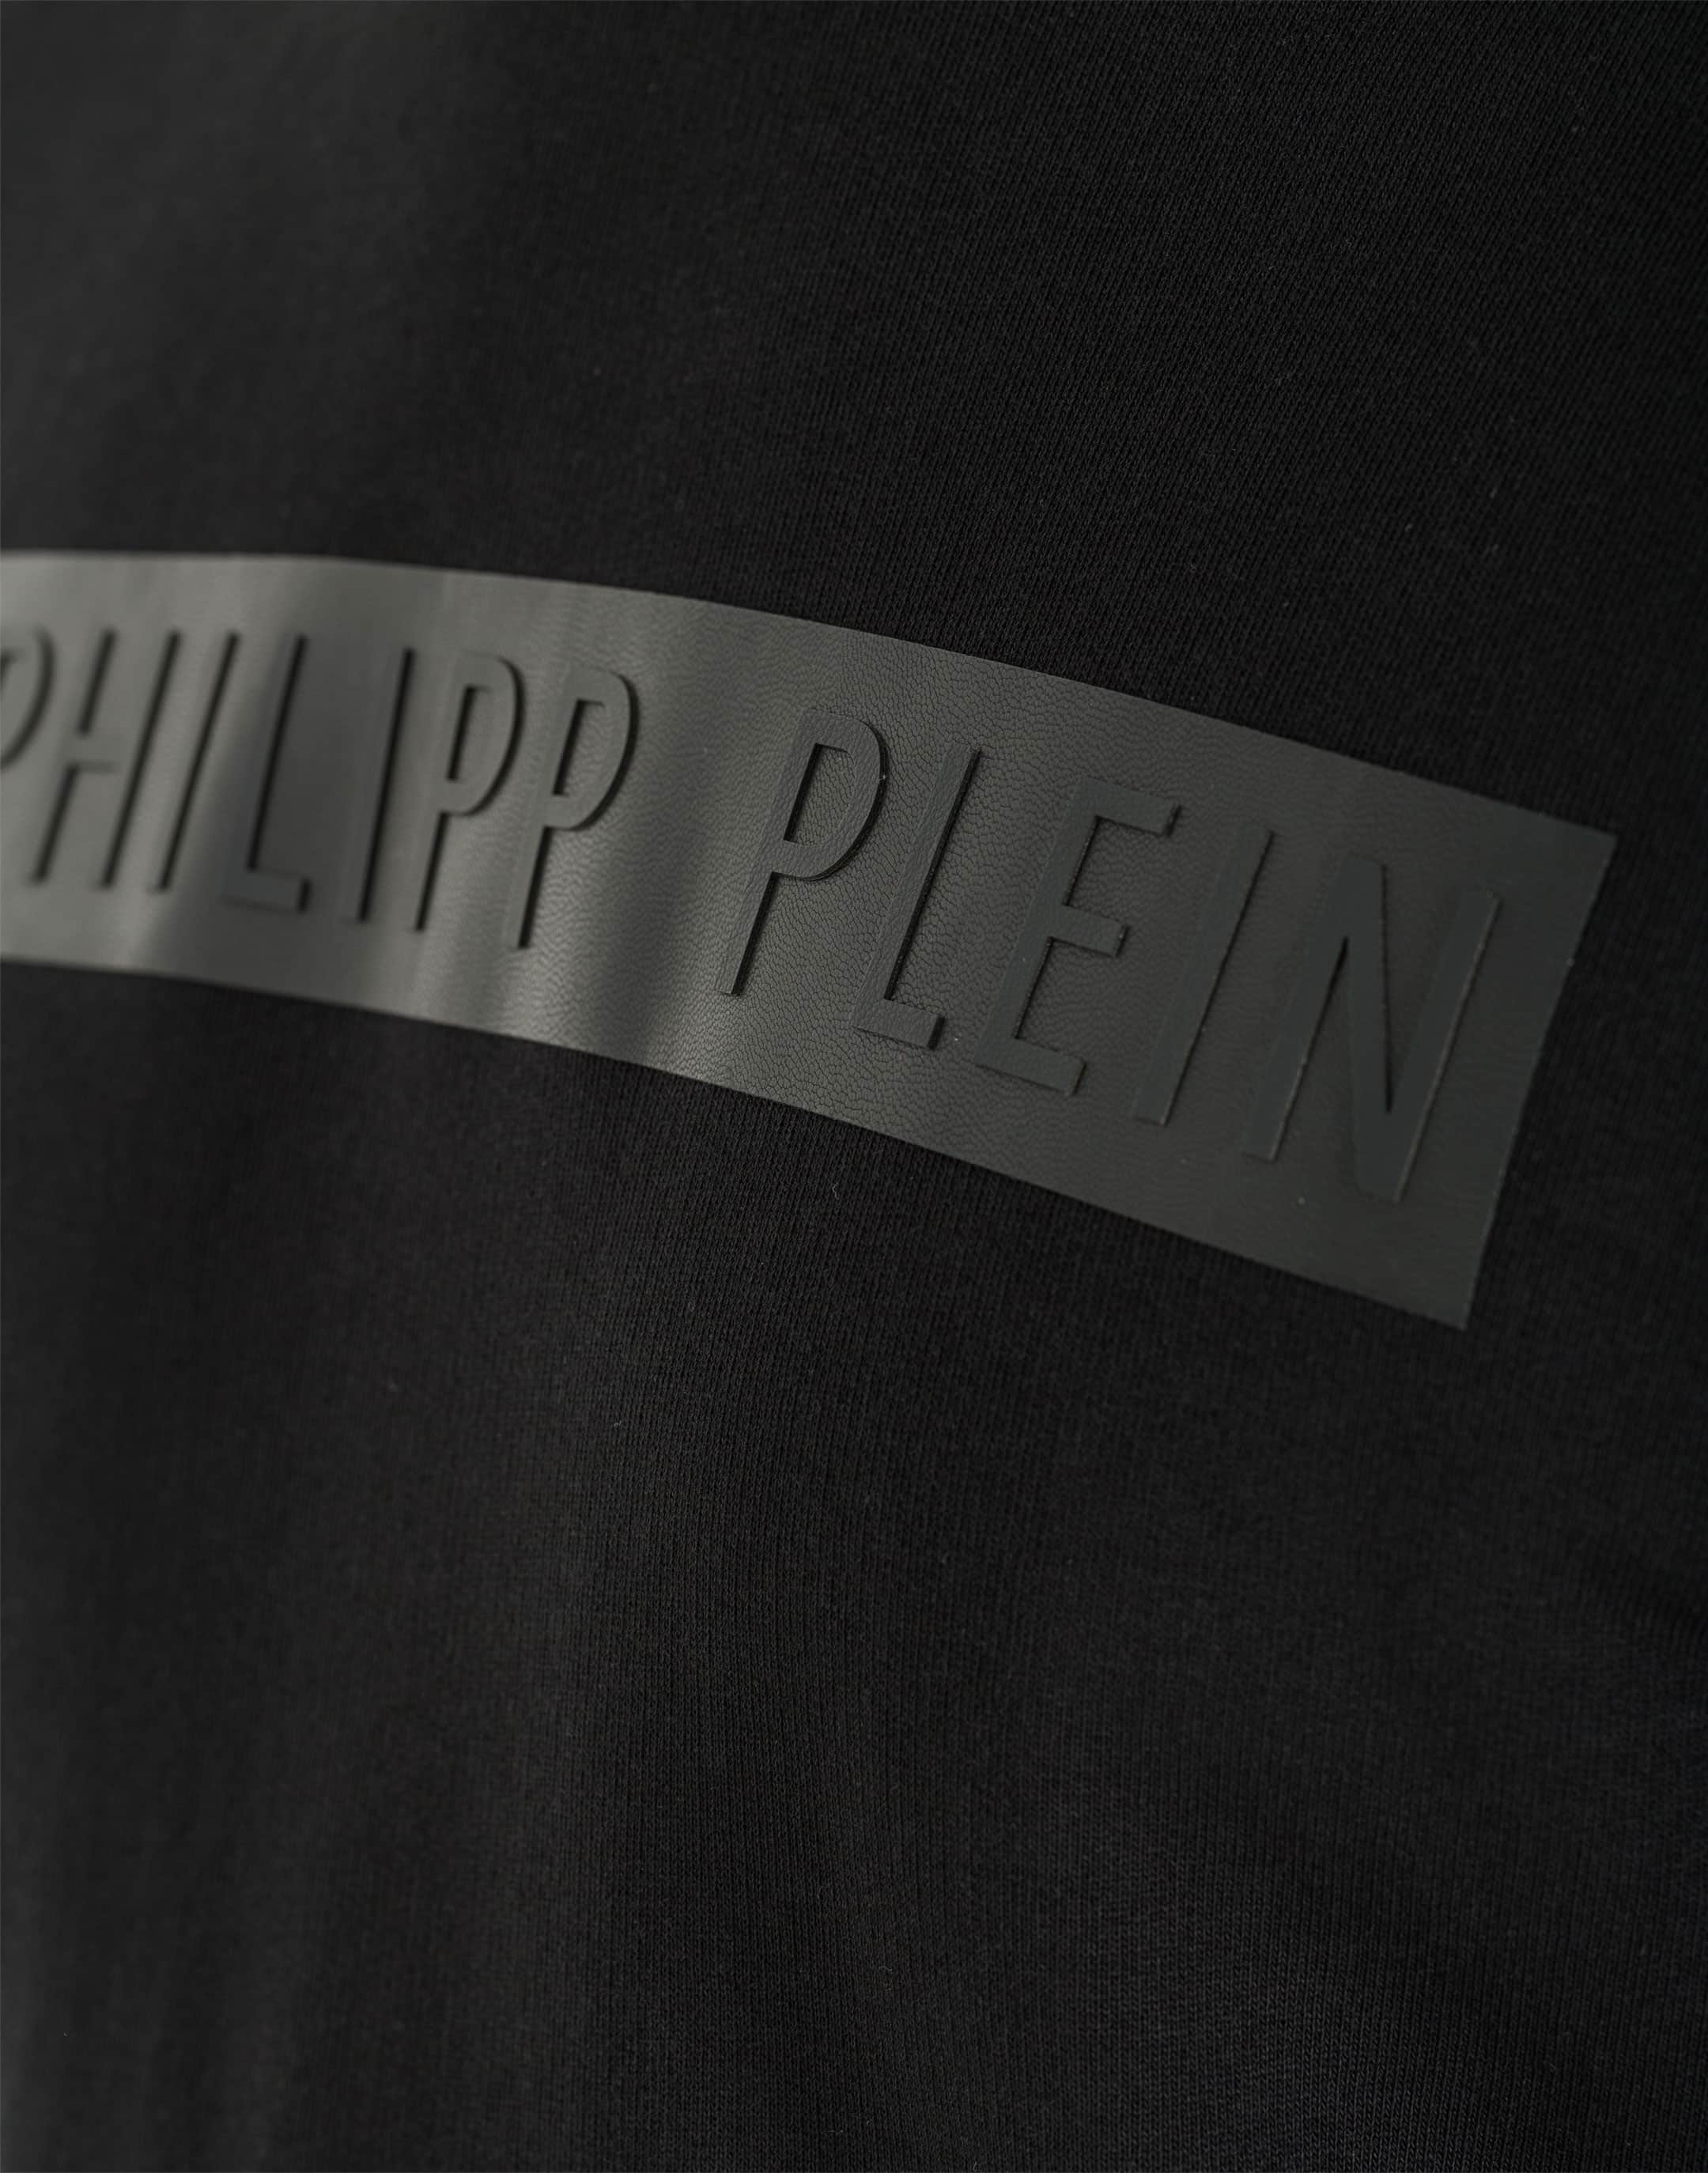 Hoodie sweatshirt "Philipp Plein" | Philipp Plein Outlet